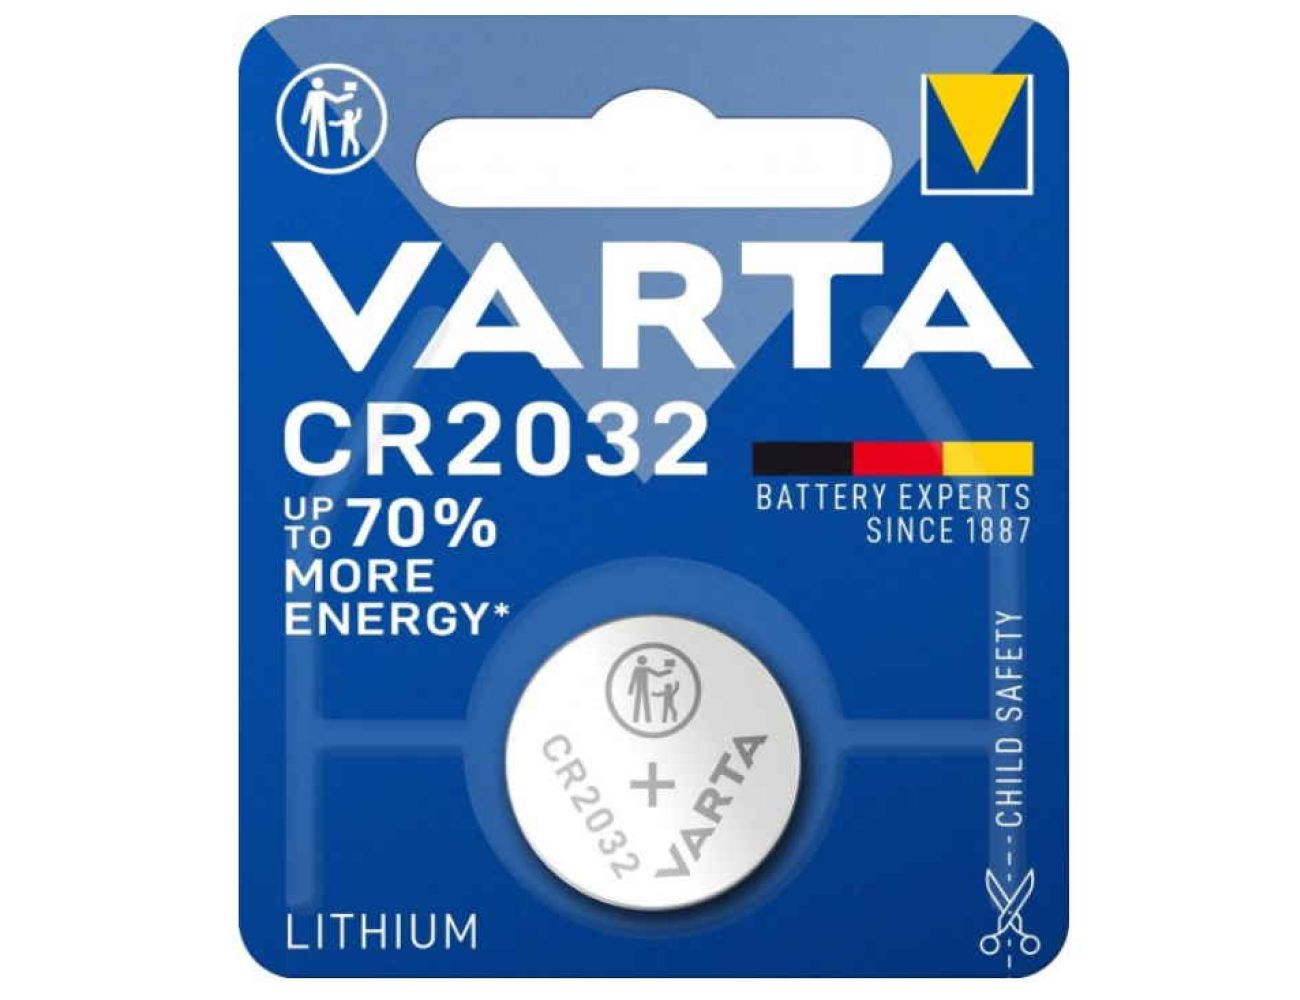 Батарейка CR2032 Varta 3V Литиевая 6032 1 шт.